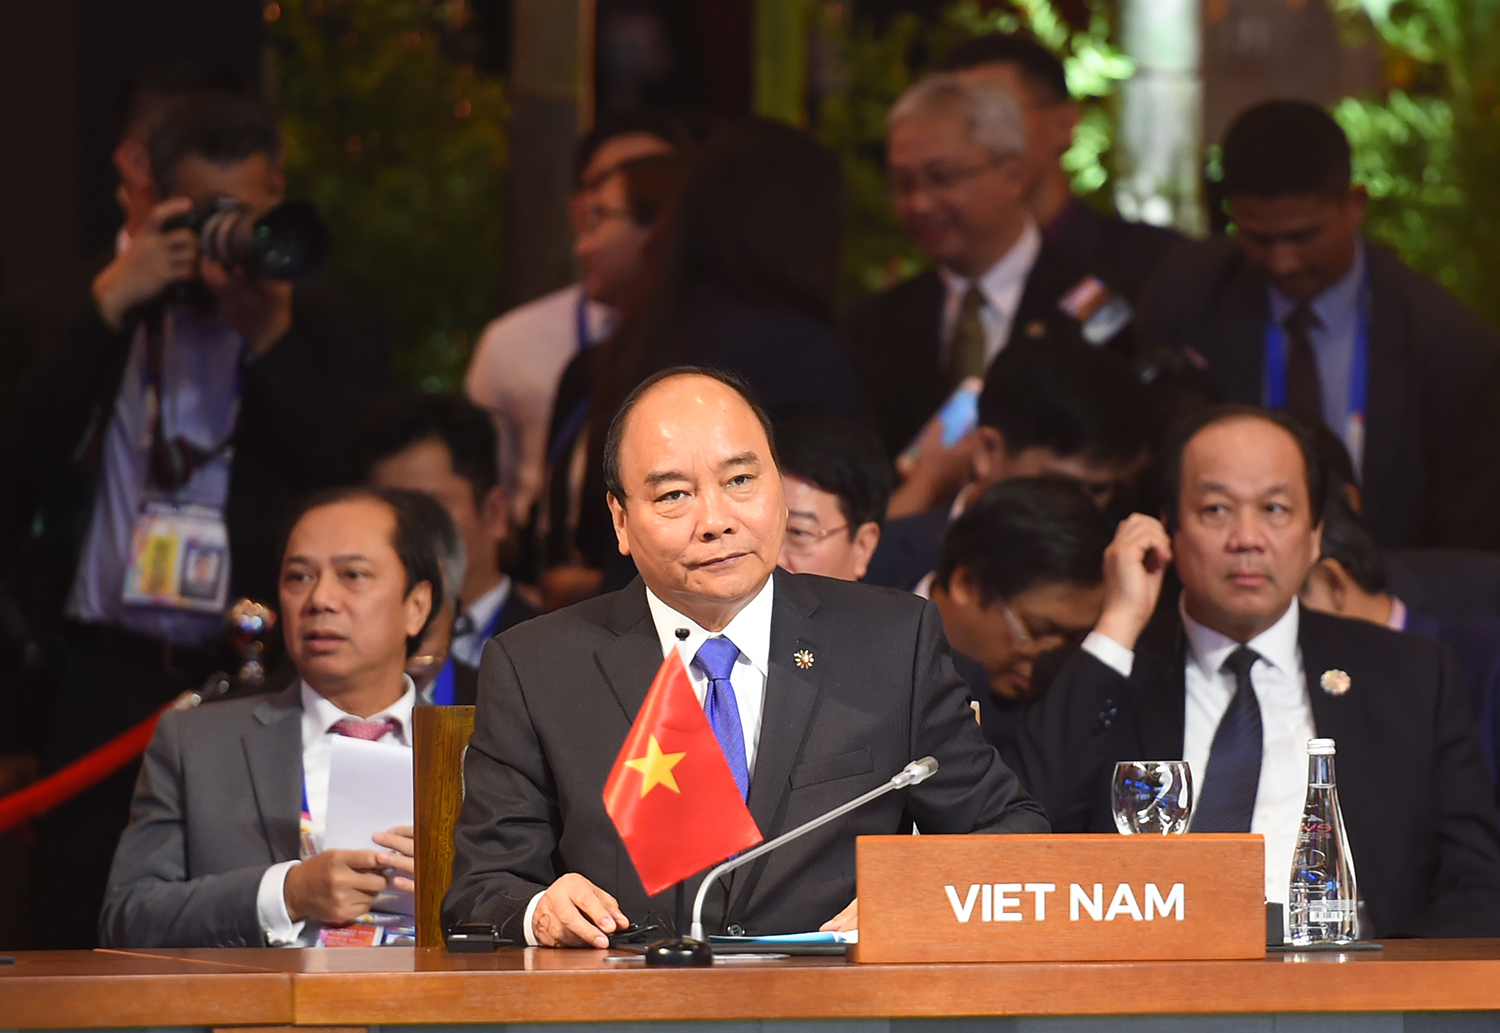 Thủ tướng Nguyễn Xuân Phúc hoan nghênh việc các nước Đông Á ưu tiên hợp tác biển